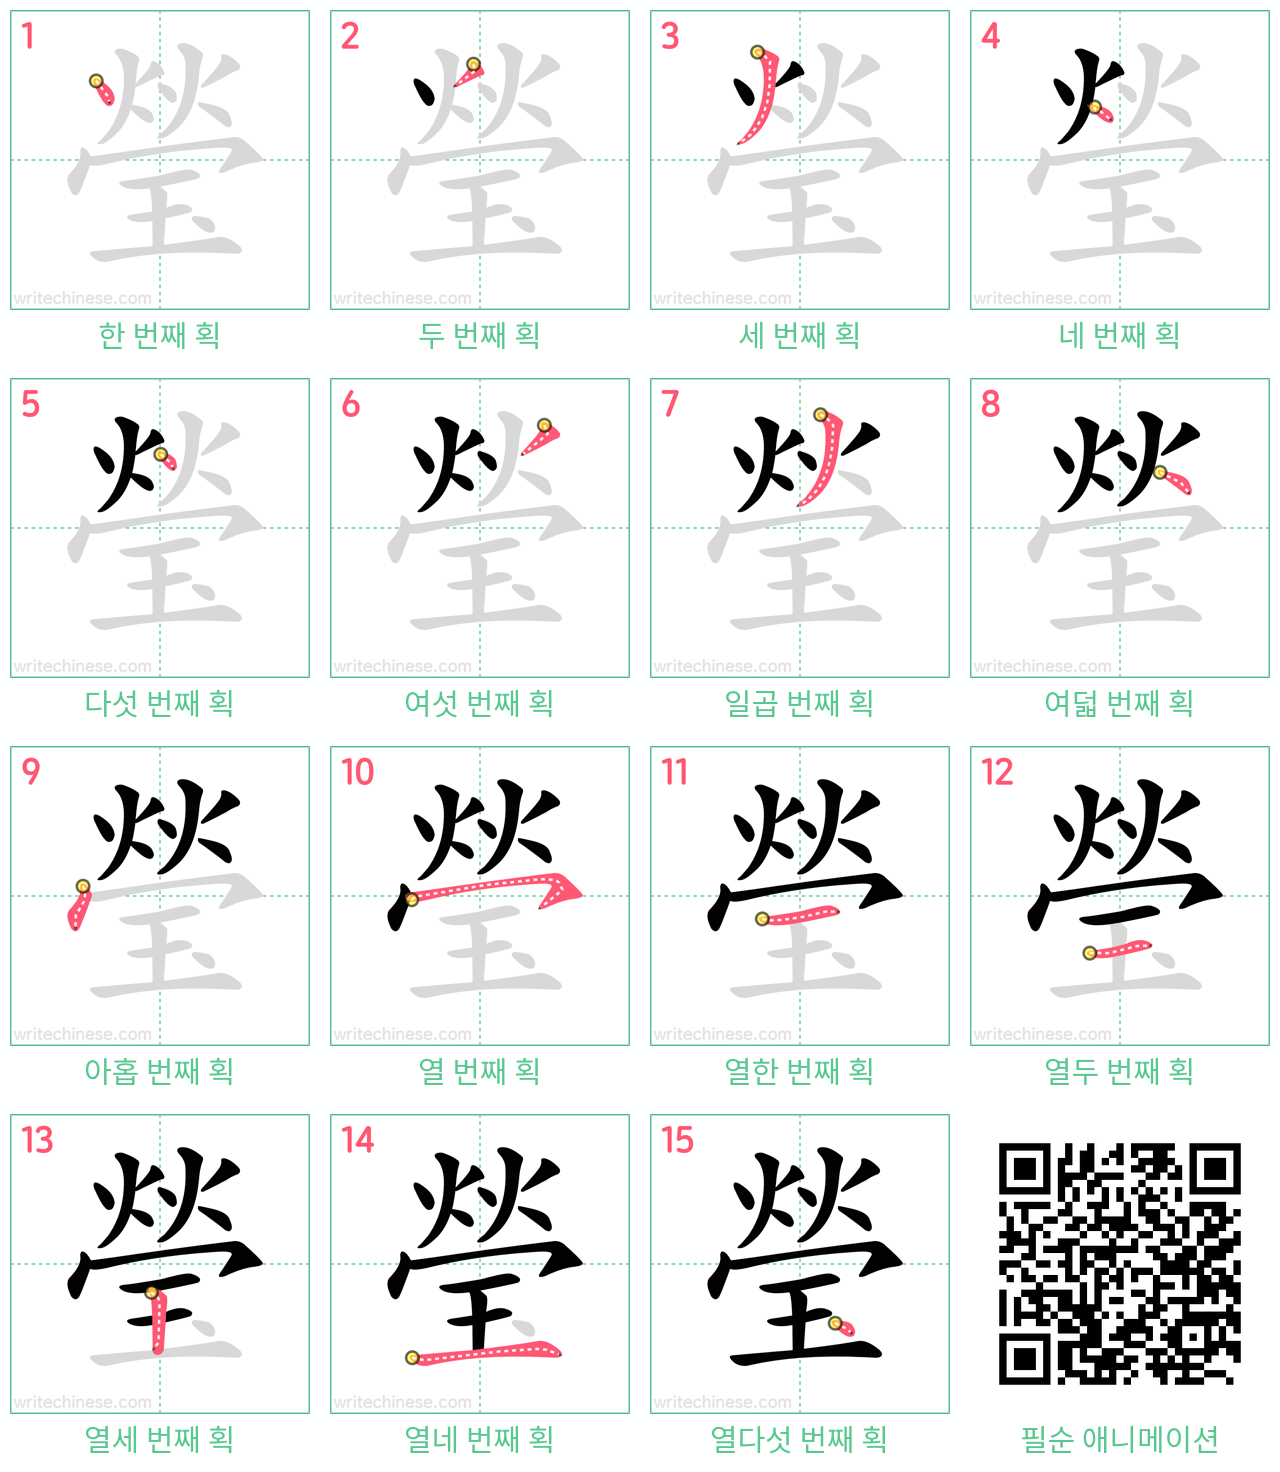 瑩 step-by-step stroke order diagrams